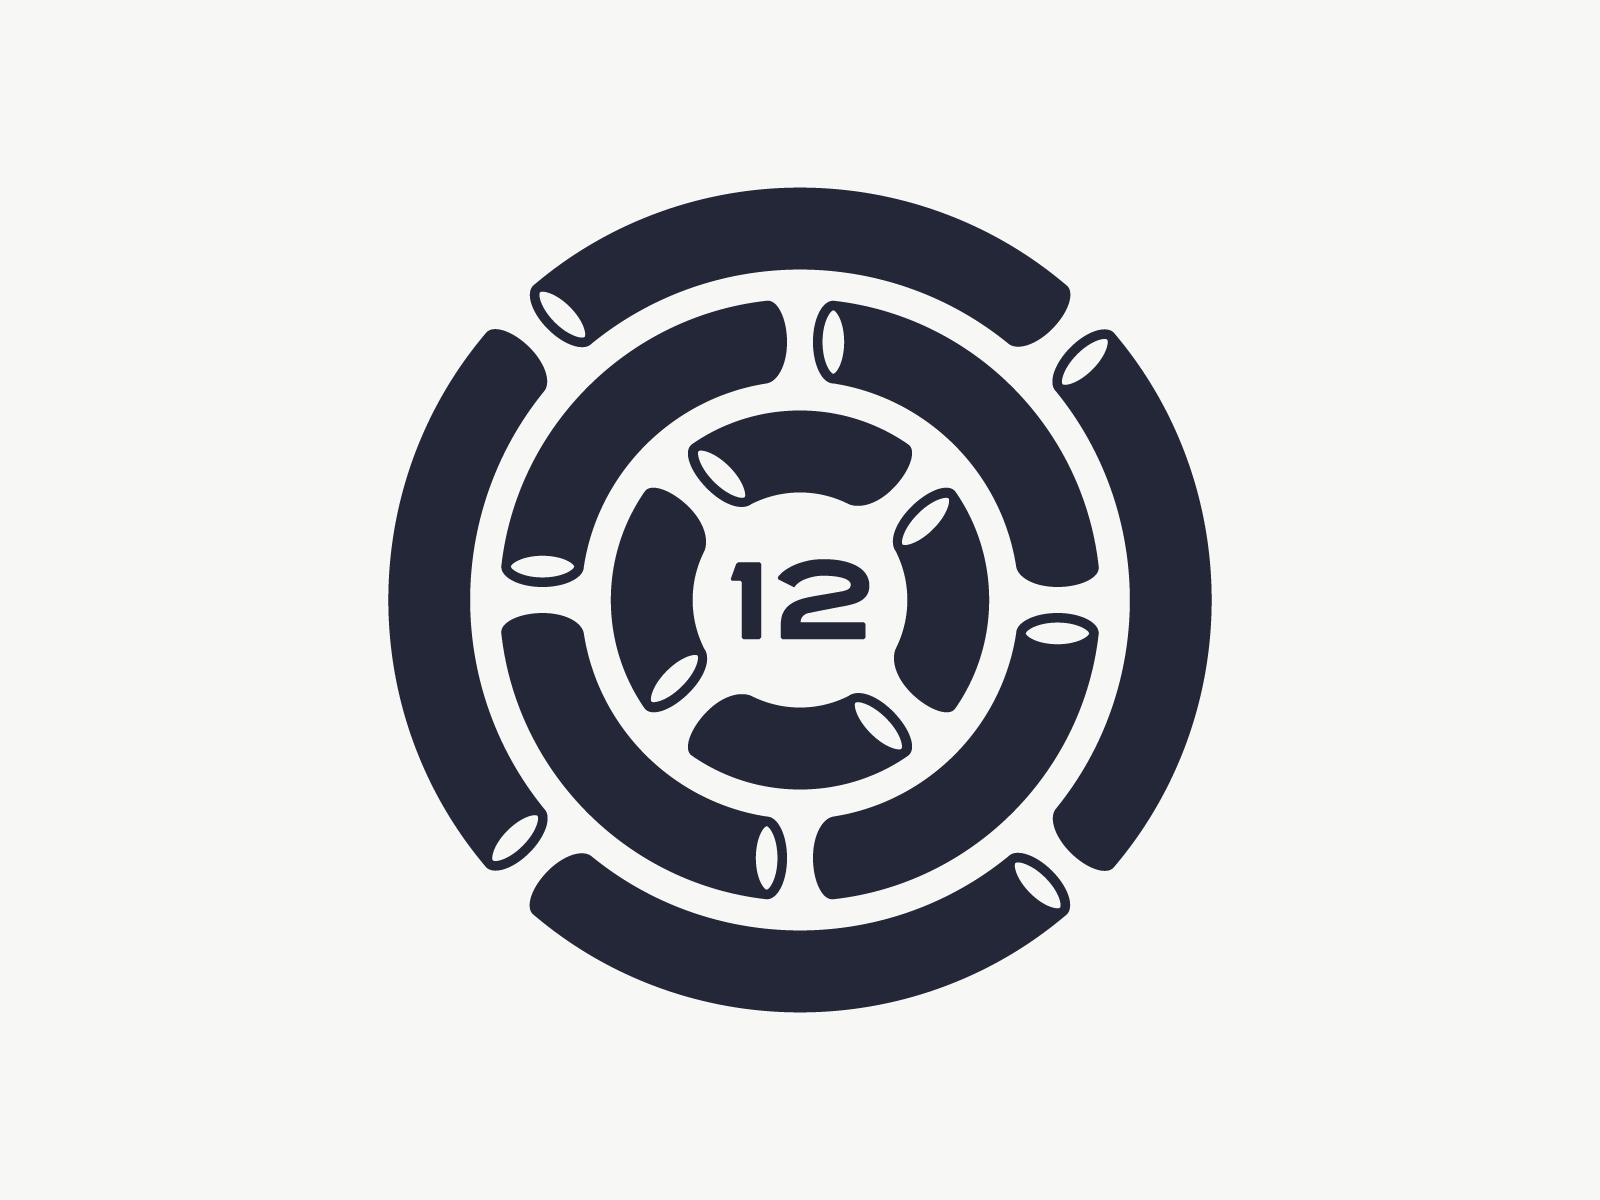 12 Tubes Animated Logomark 12 animated animation design logo logo design logomark looping recurring subscription tubes